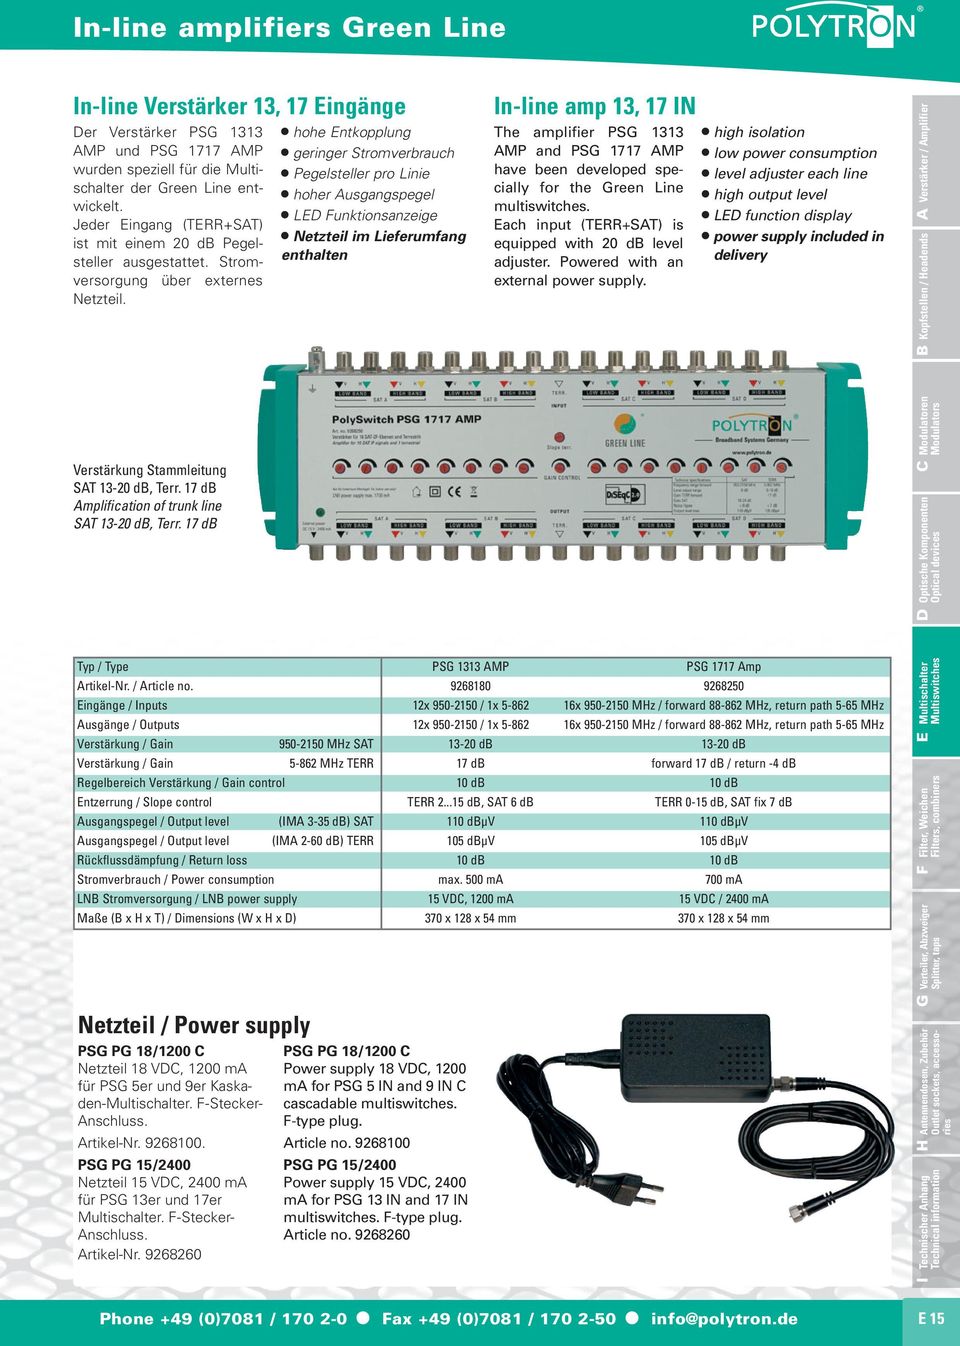 hohe Entkopplung geringer Stromverbrauch Pegelsteller pro Linie hoher Ausgangspegel LED Funktionsanzeige Netzteil im Lieferumfang enthalten In-line amp 13, 17 IN The amplifier PSG 1313 AMP and PSG